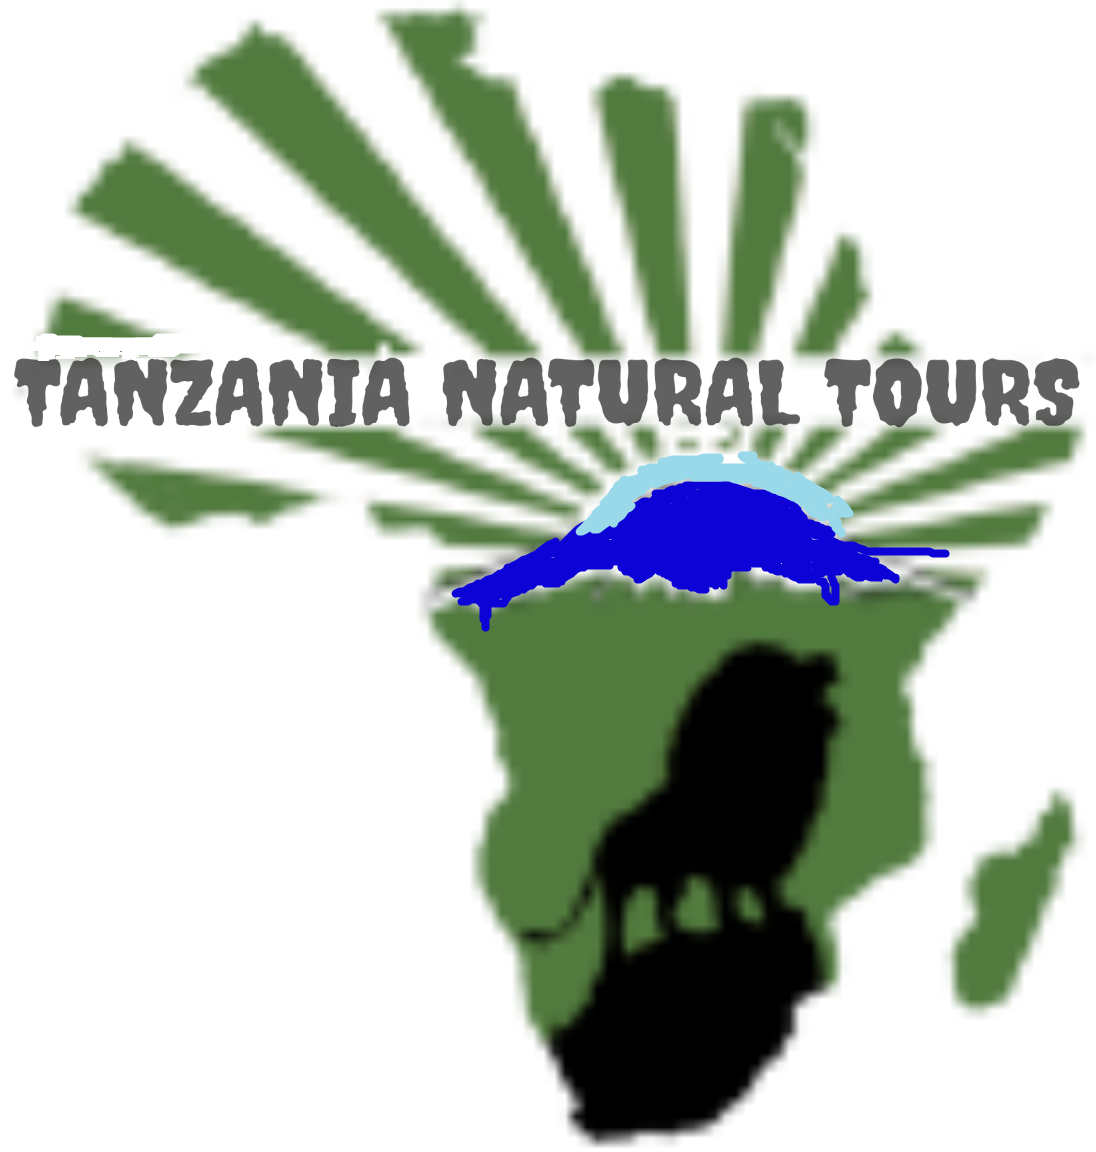 Tanzania open for tourism